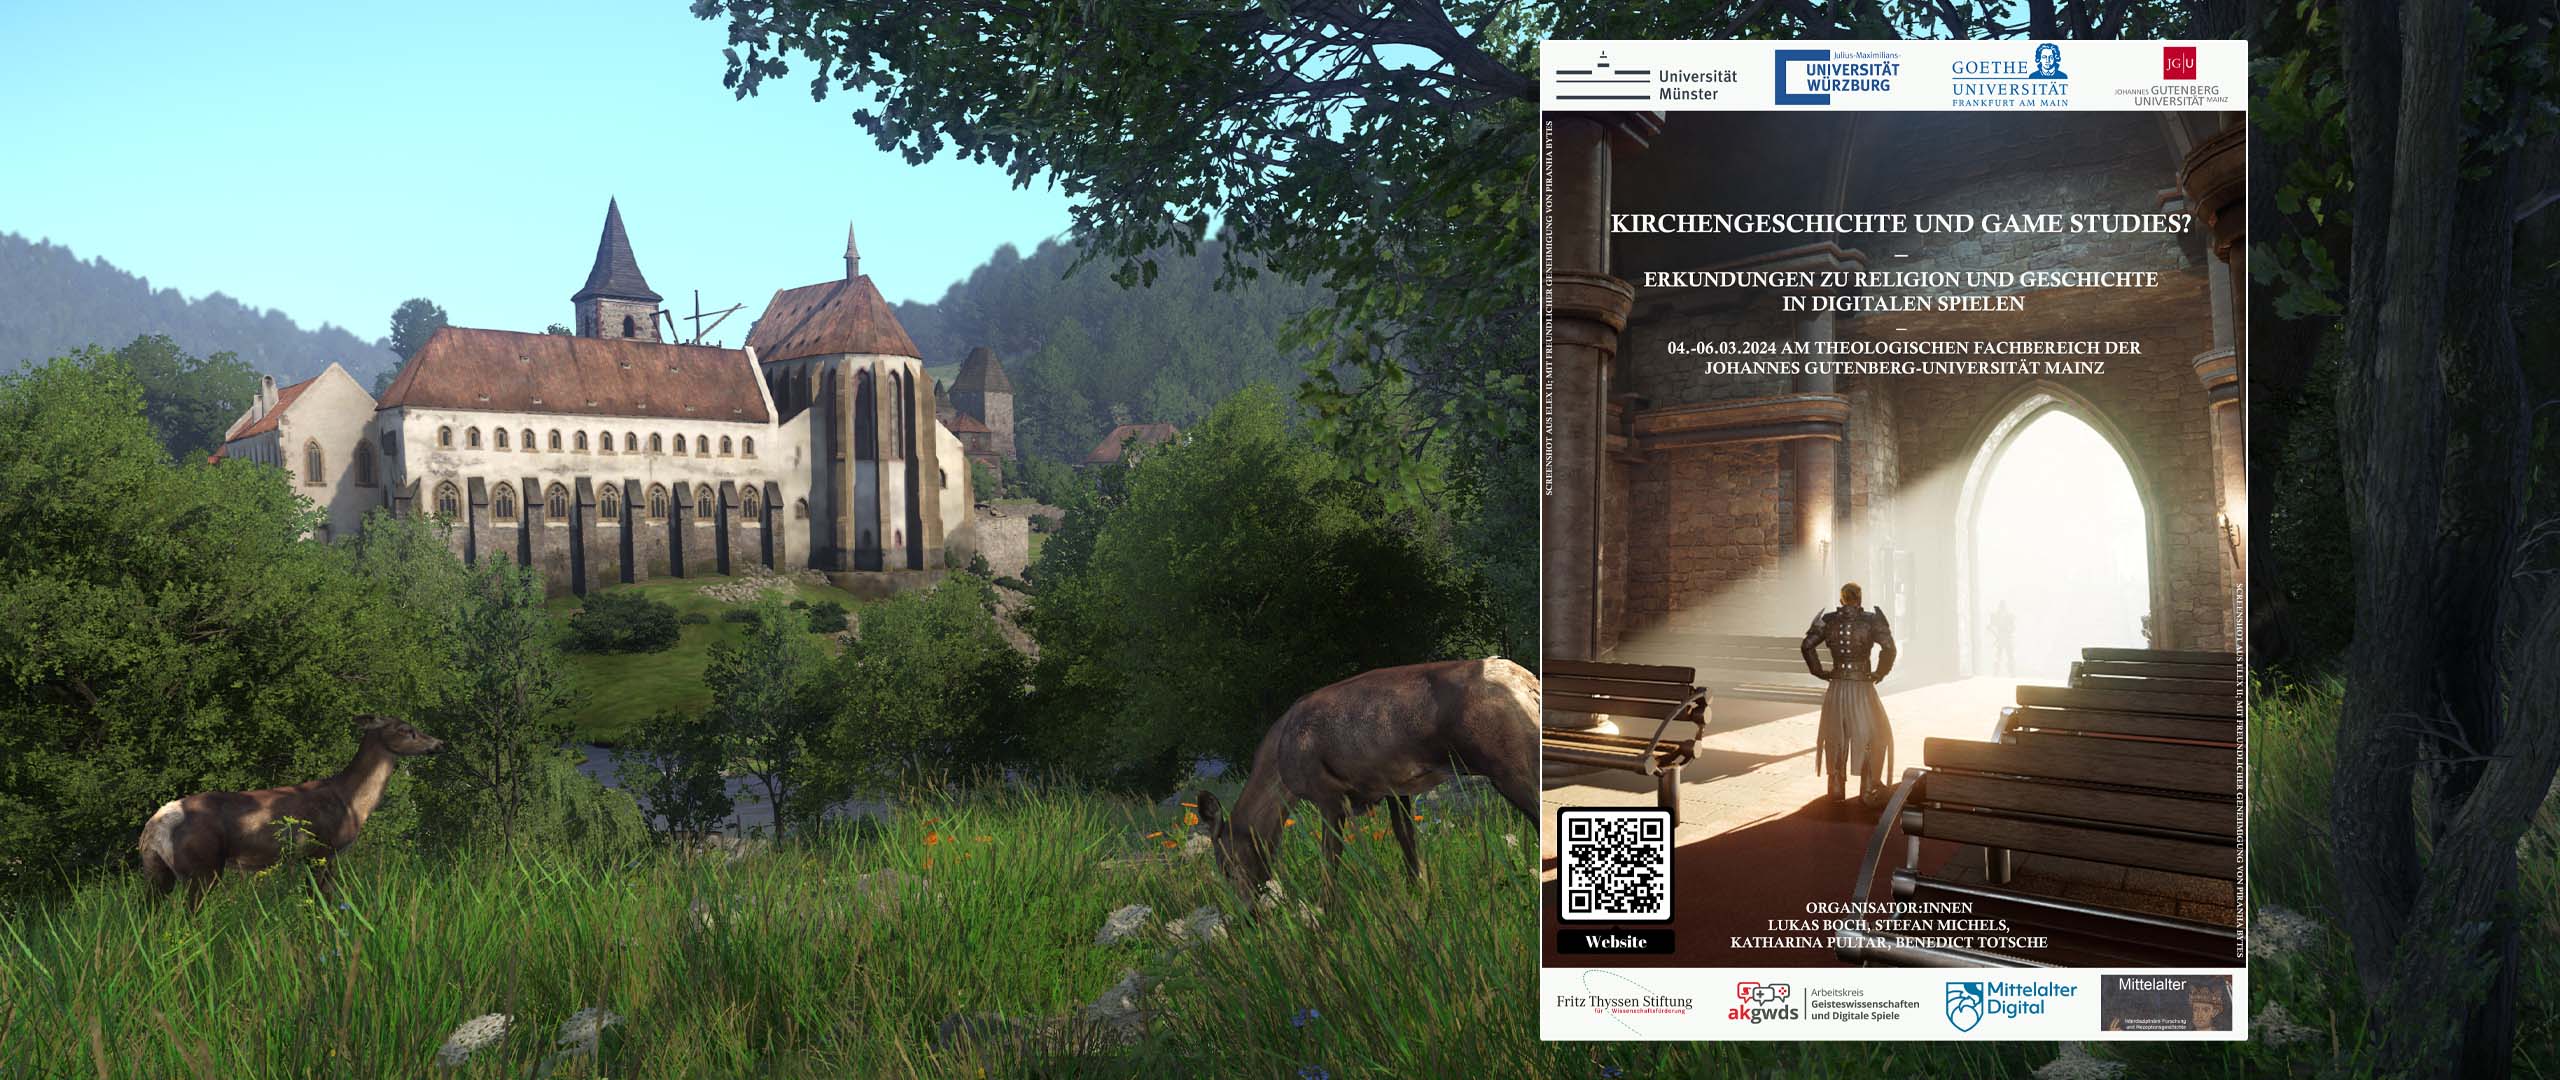 Tagungsbericht: Kirchengeschichte und Game Studies? Erkundungen zu Religion und Geschichte in Digitalen Spielen